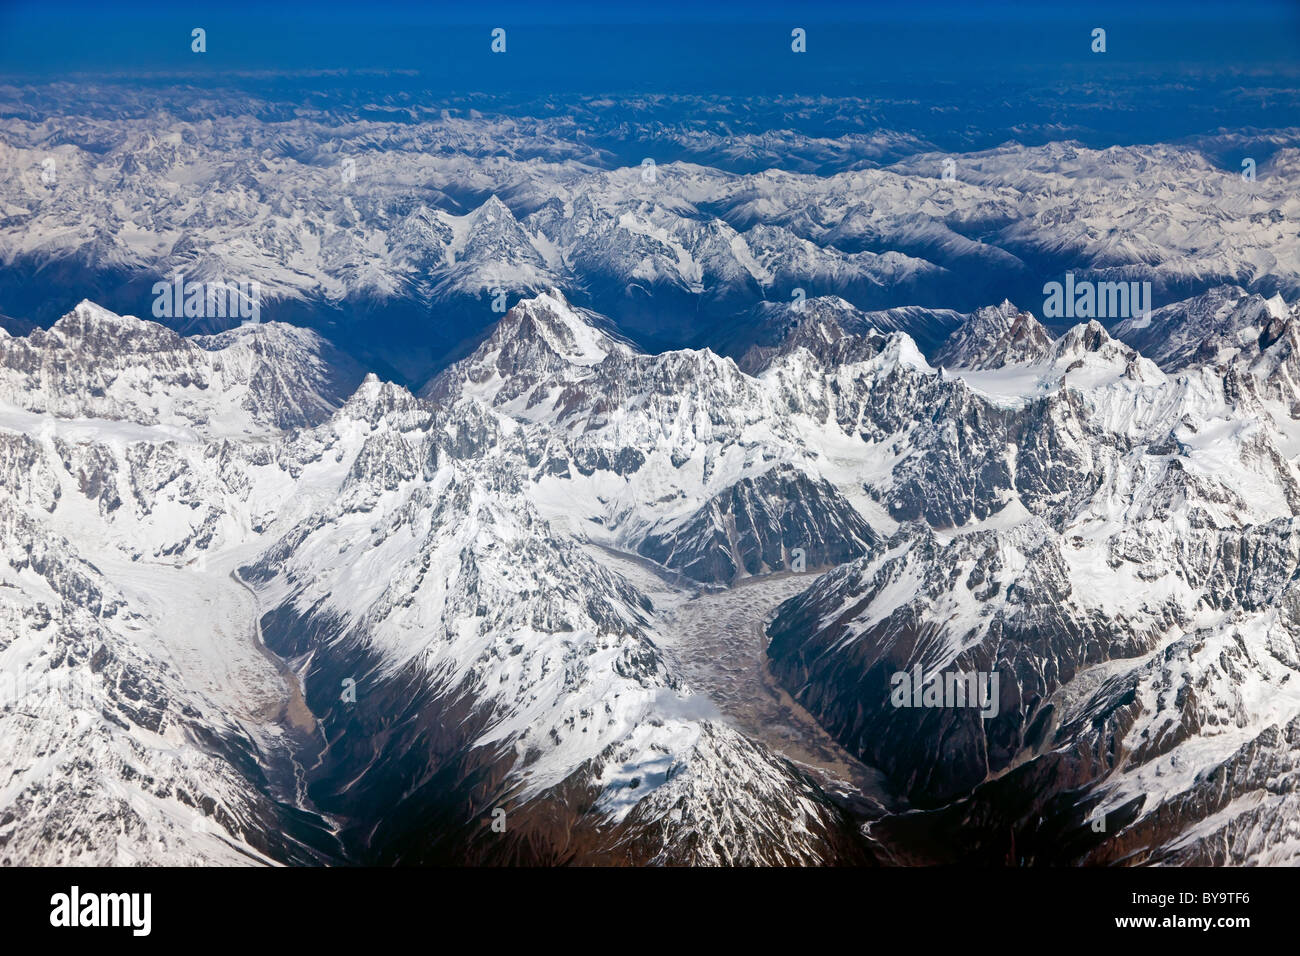 Montagnes reculées de l'Est de l'Himalaya vu de l'avion entre Lhassa au Tibet et à Chengdu, province du Sichuan, Chine. JMH4728 Banque D'Images